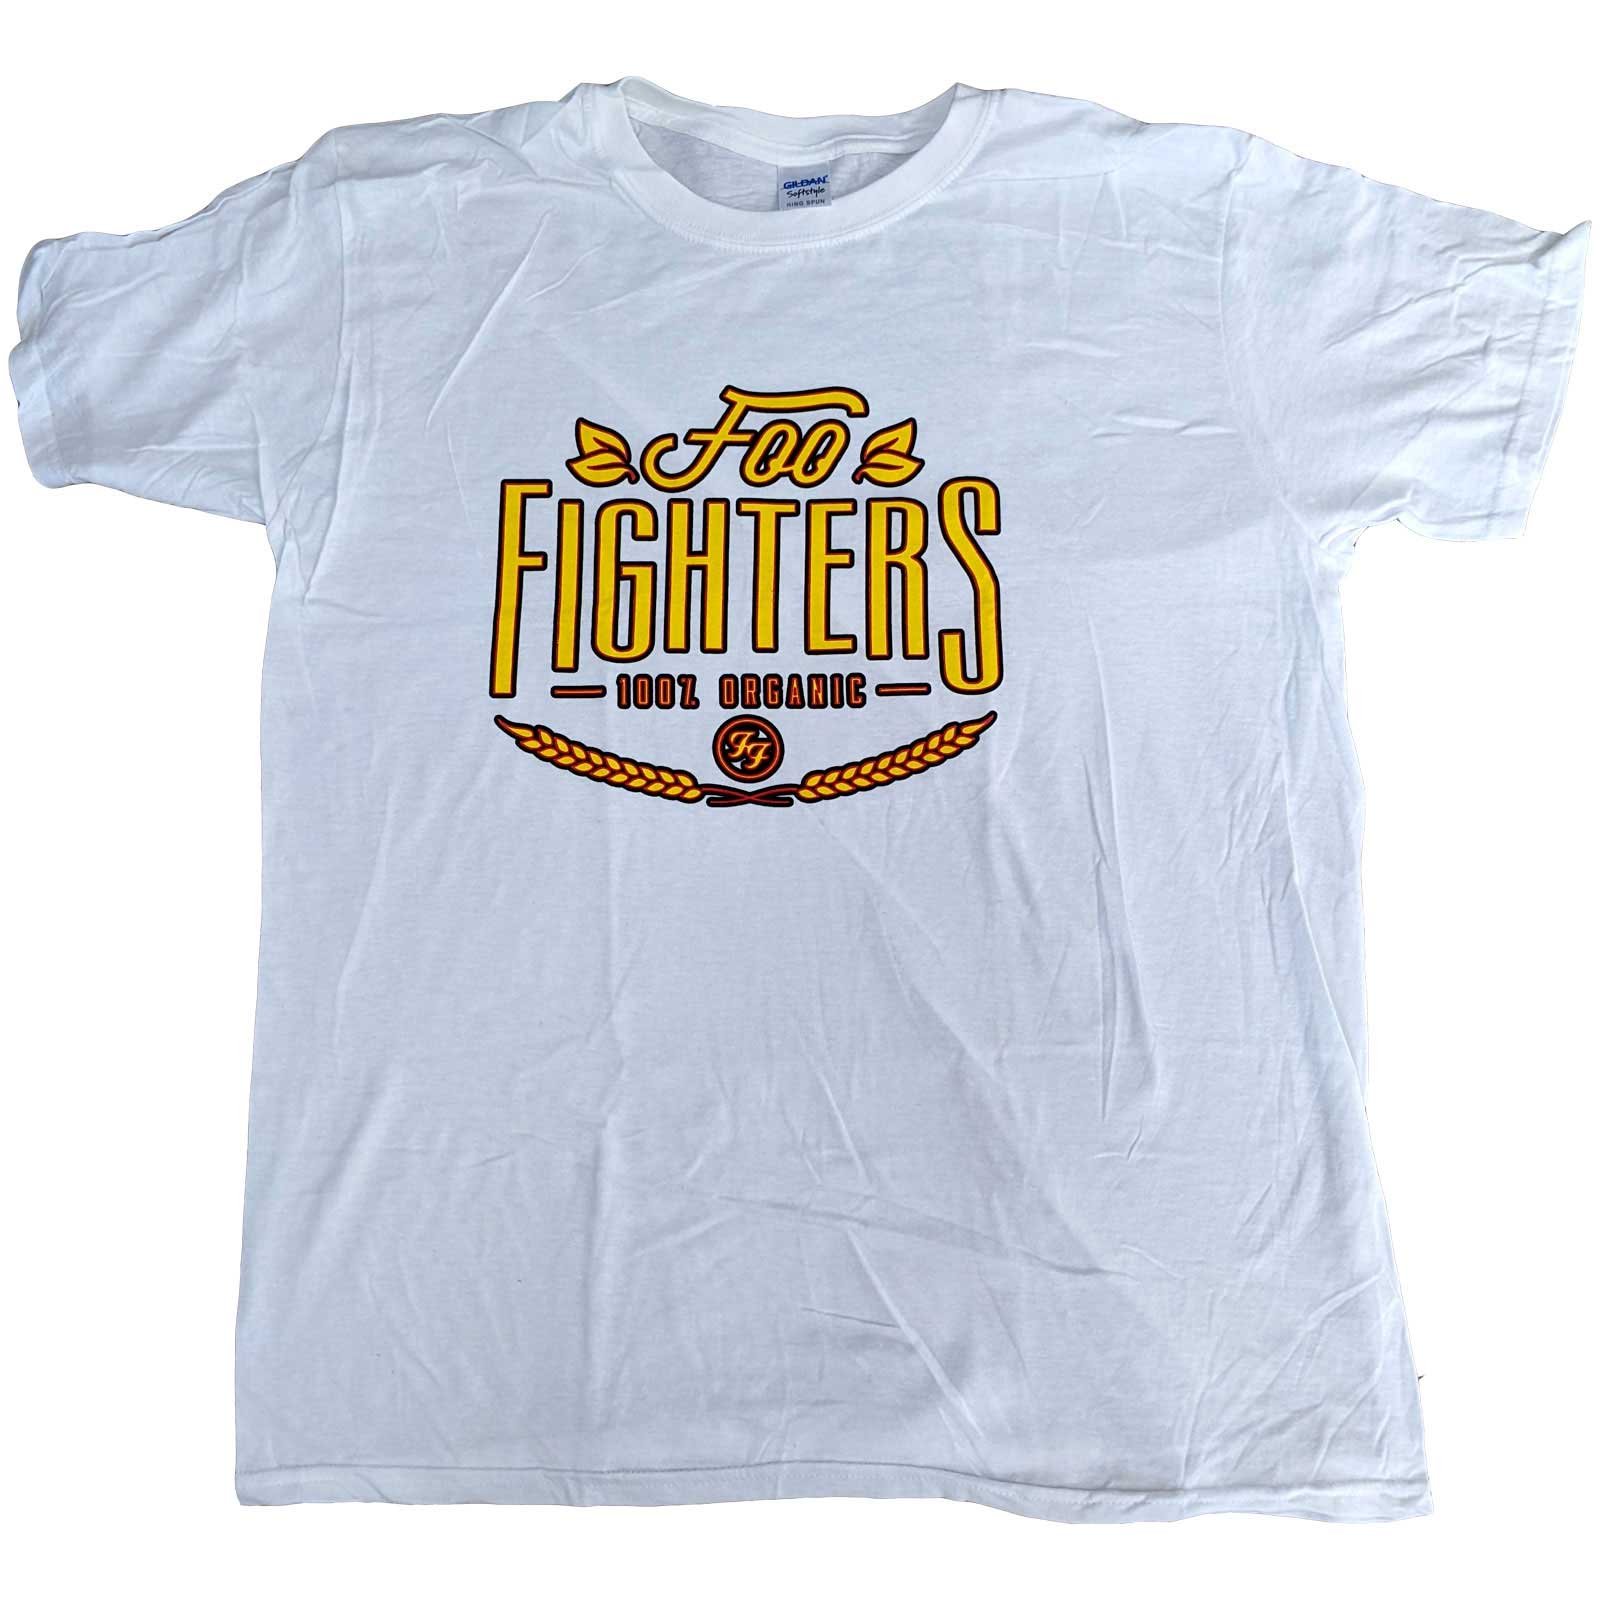 Foo Fighters tričko 100% Organic Biela XL